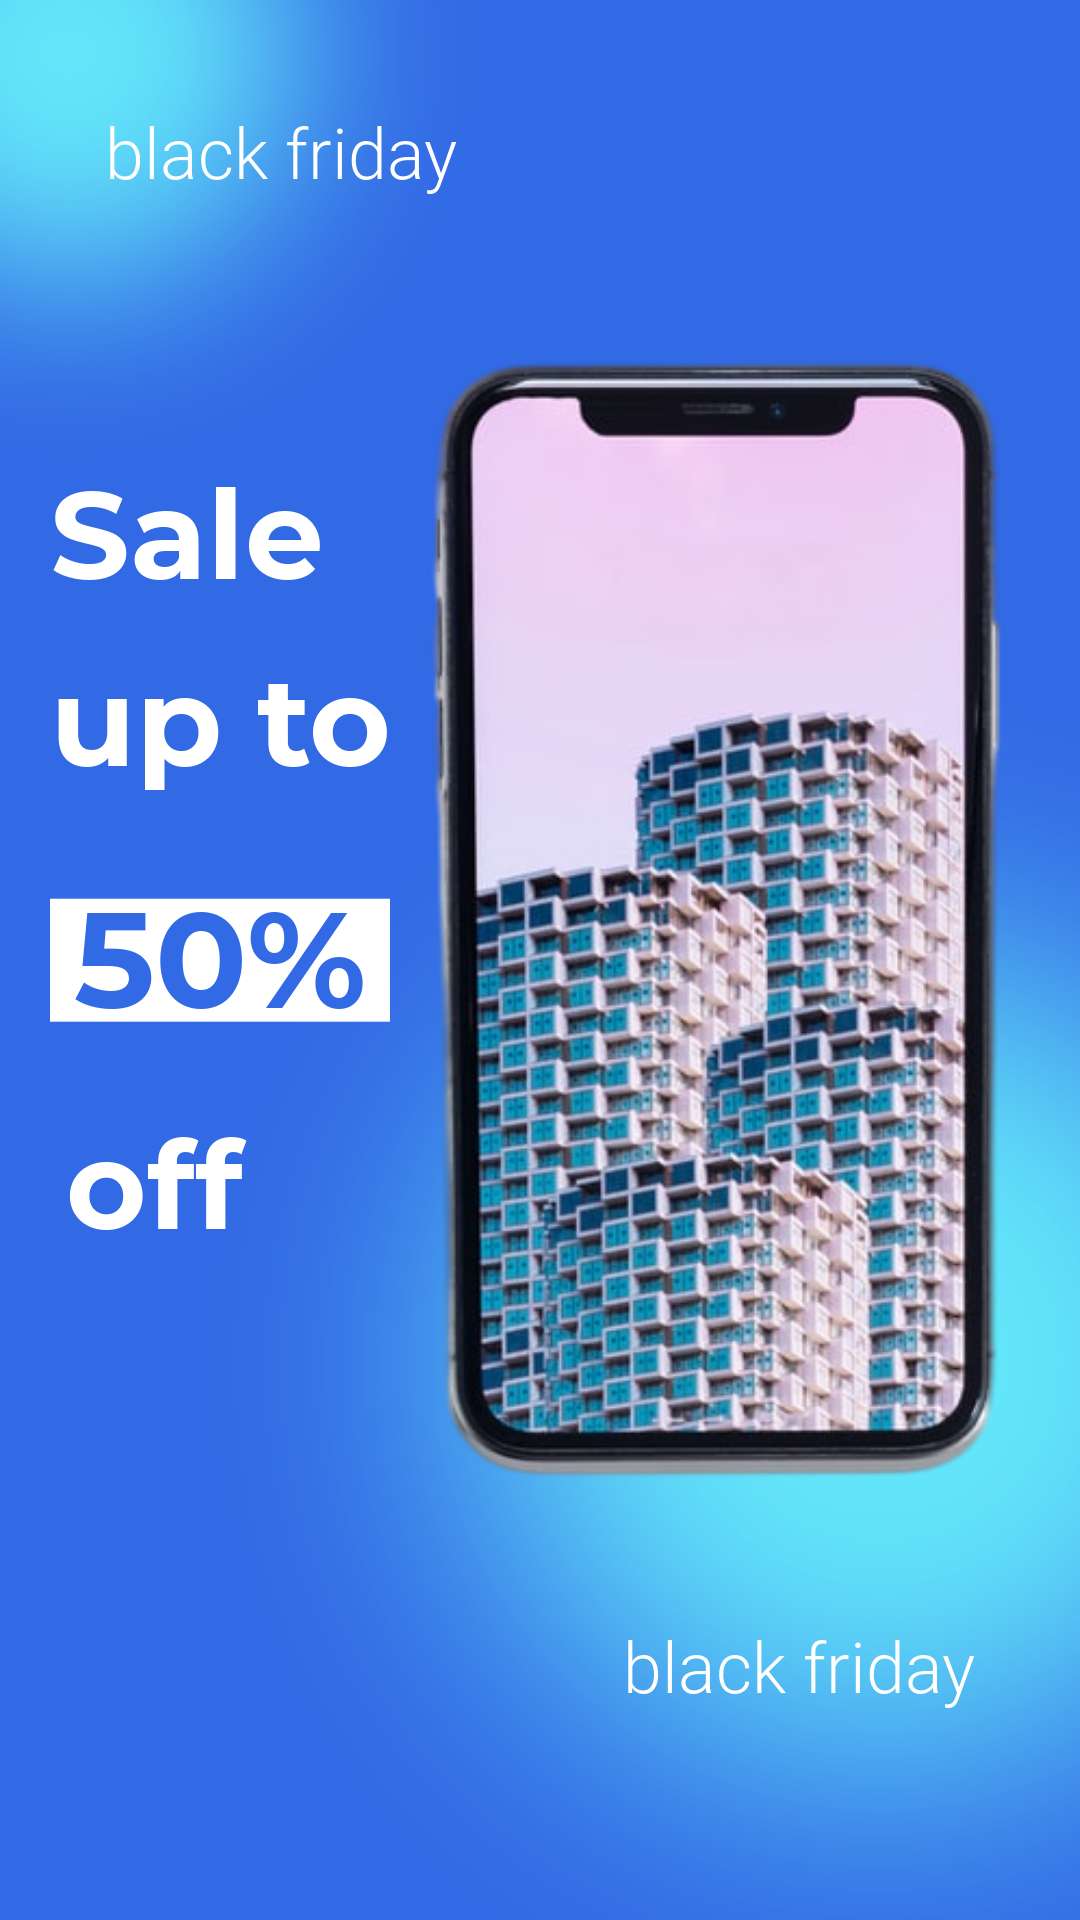 Ярко-синий рекламный баннер для black friday для распродажи товаров со скидкой 50% и фото мобильного телефона